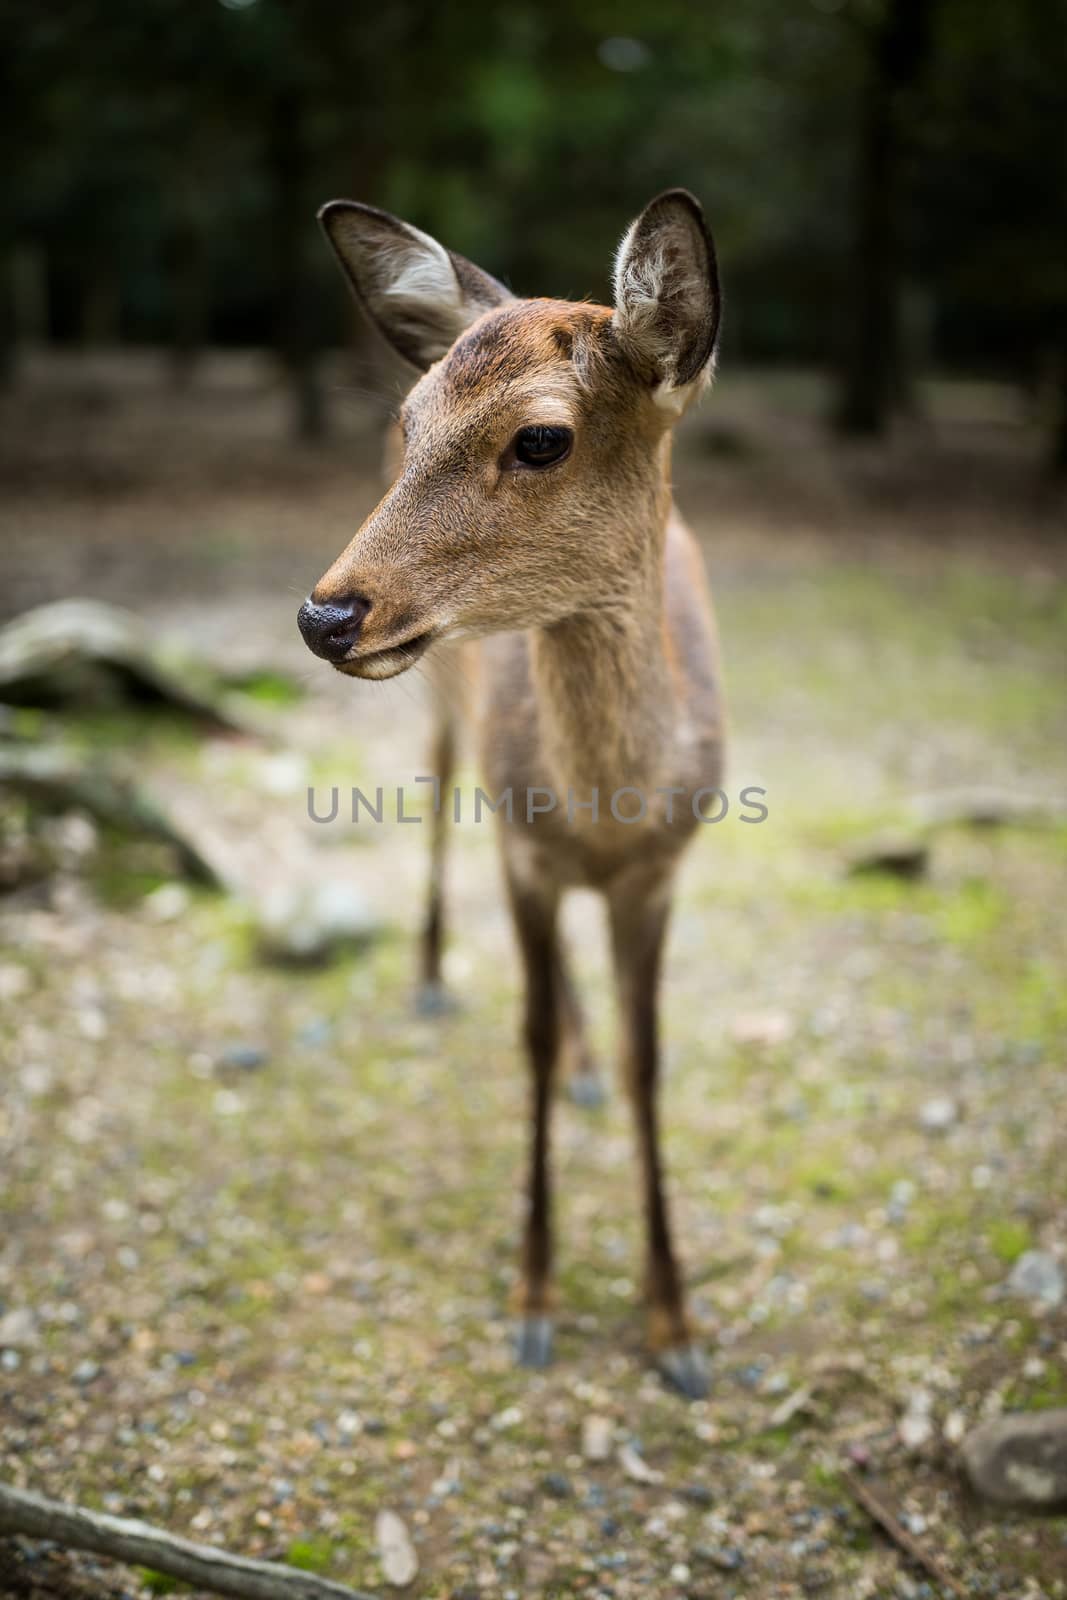 Cute deer in park by leungchopan